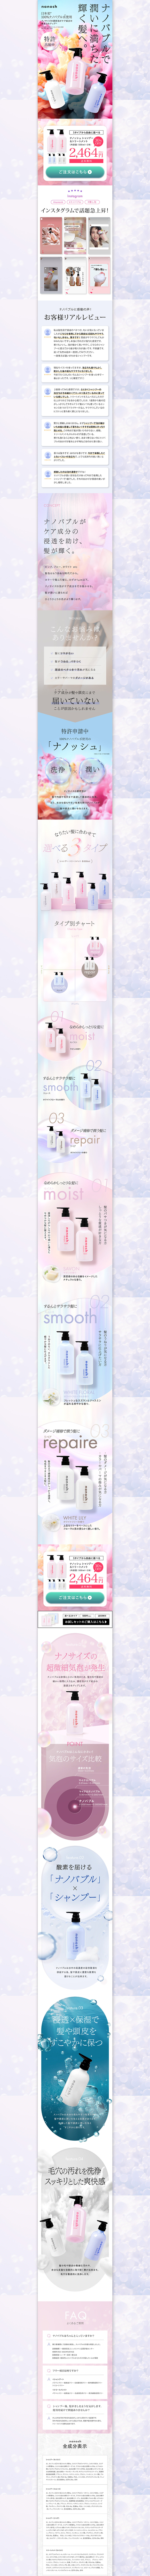 nanosu shampoo_pc_1